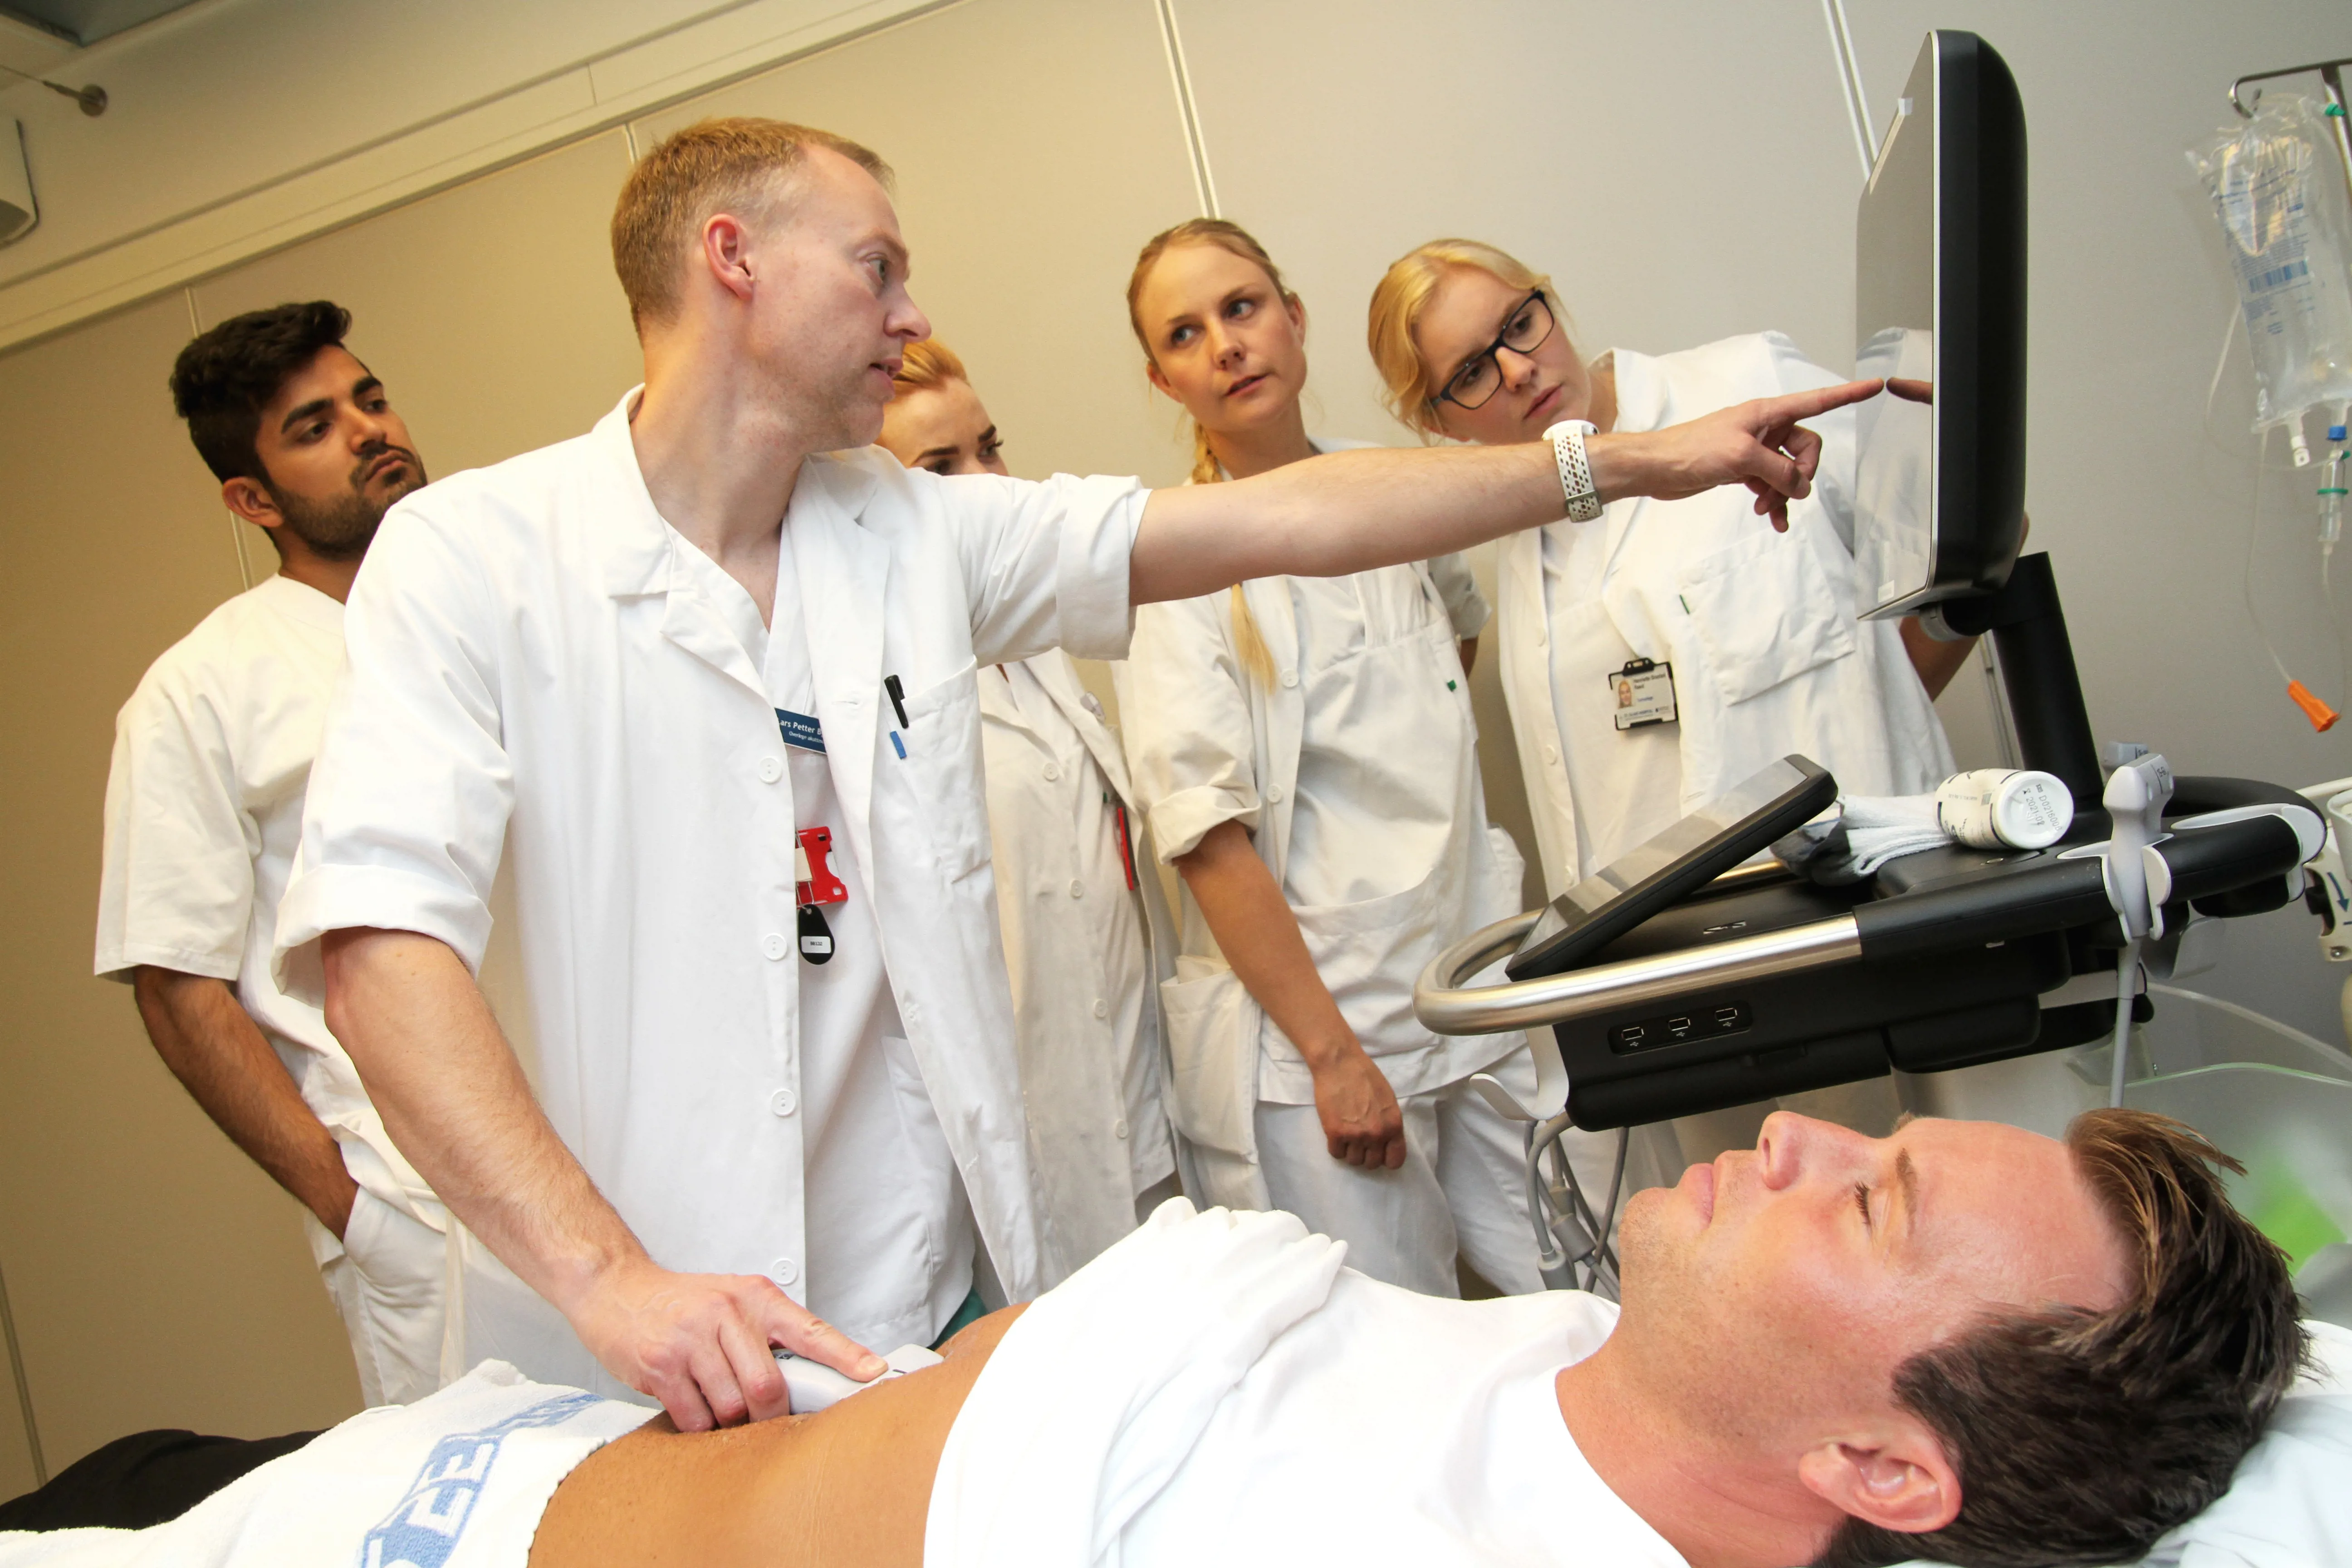 En lege holder en ultralydprobemot magen til en pasient som ligger på ryggen på en seng. Legen peker på en skjerm. 